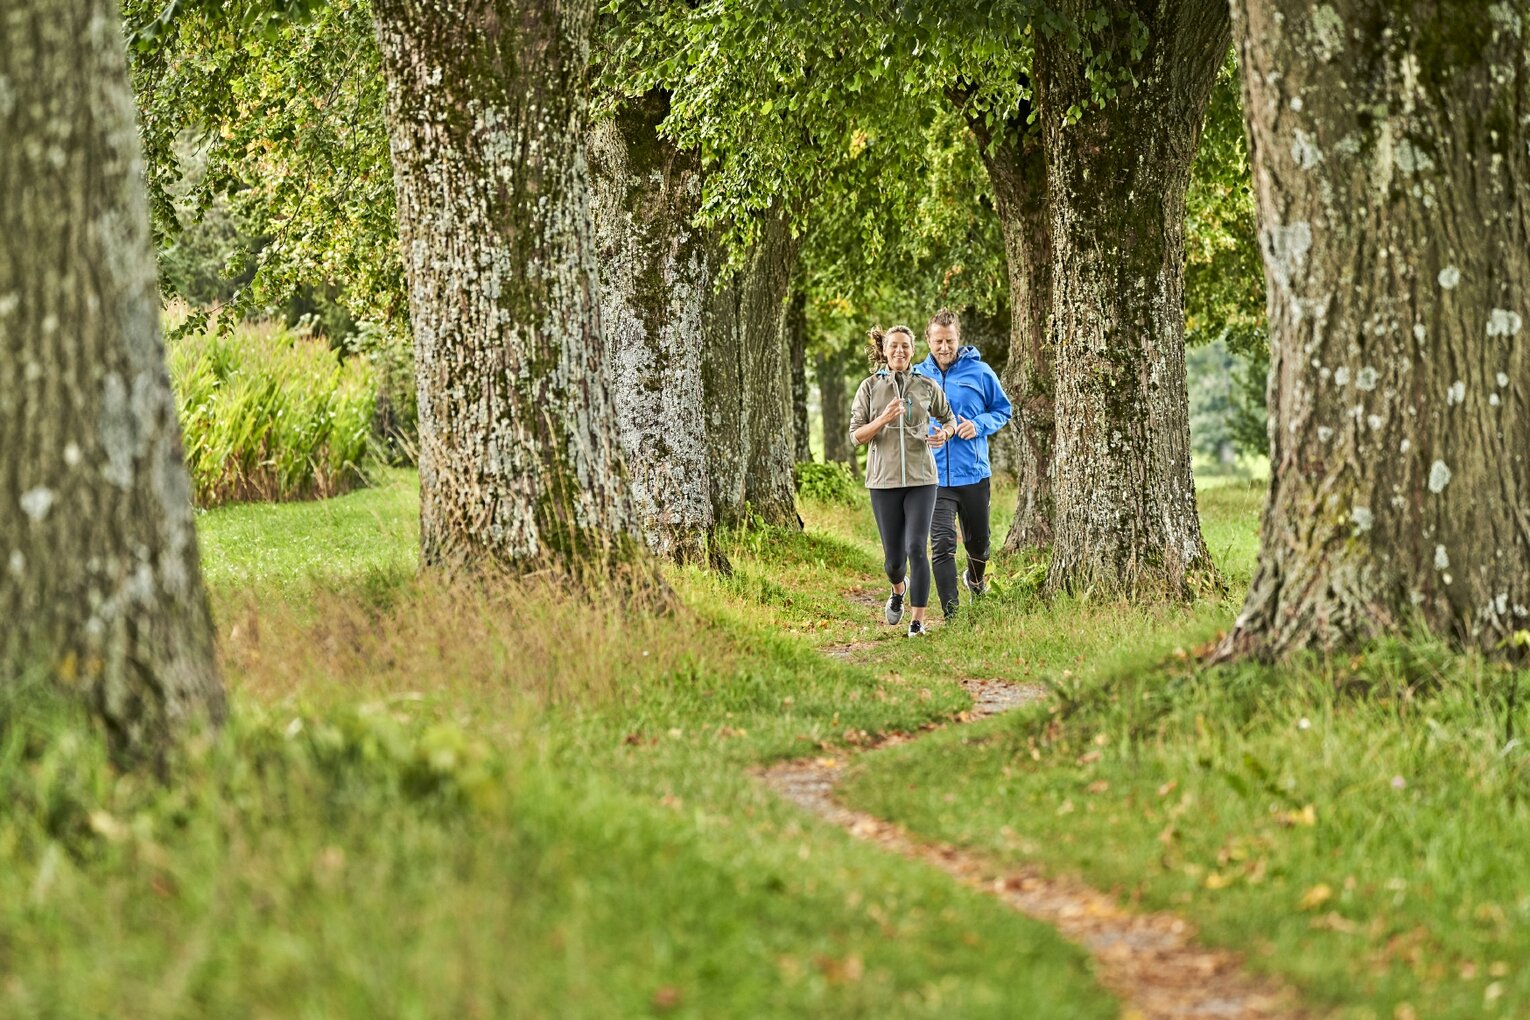 Hier sehen Sie zwei Personen, die auf einen Weg zwischen Bäumen joggen gehen.